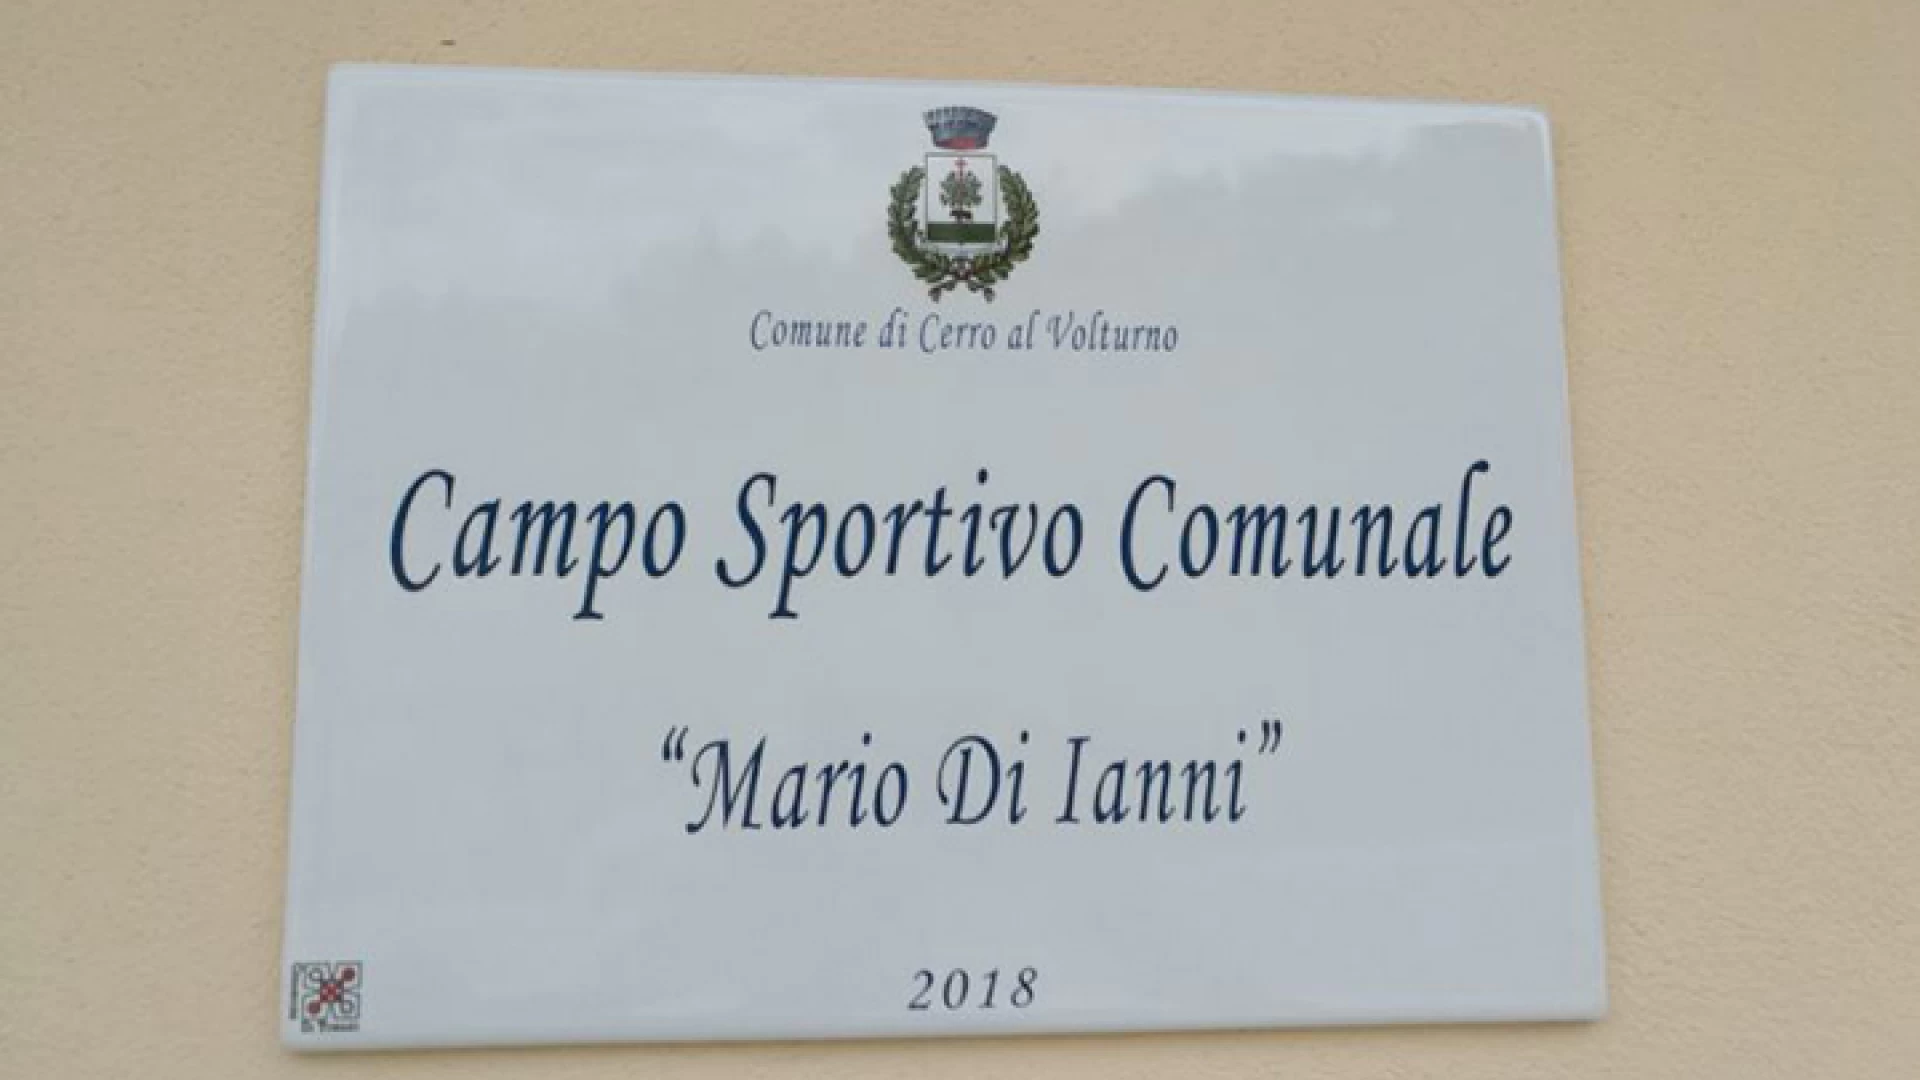 Cerro al Volturno: il campo sportivo è dedicato ufficialmente alla memoria del compianto “Mario Di Ianni”. Nei giorni scorsi sistemata la targa ricordo in onore dell’illustre uomo politico cerrese.